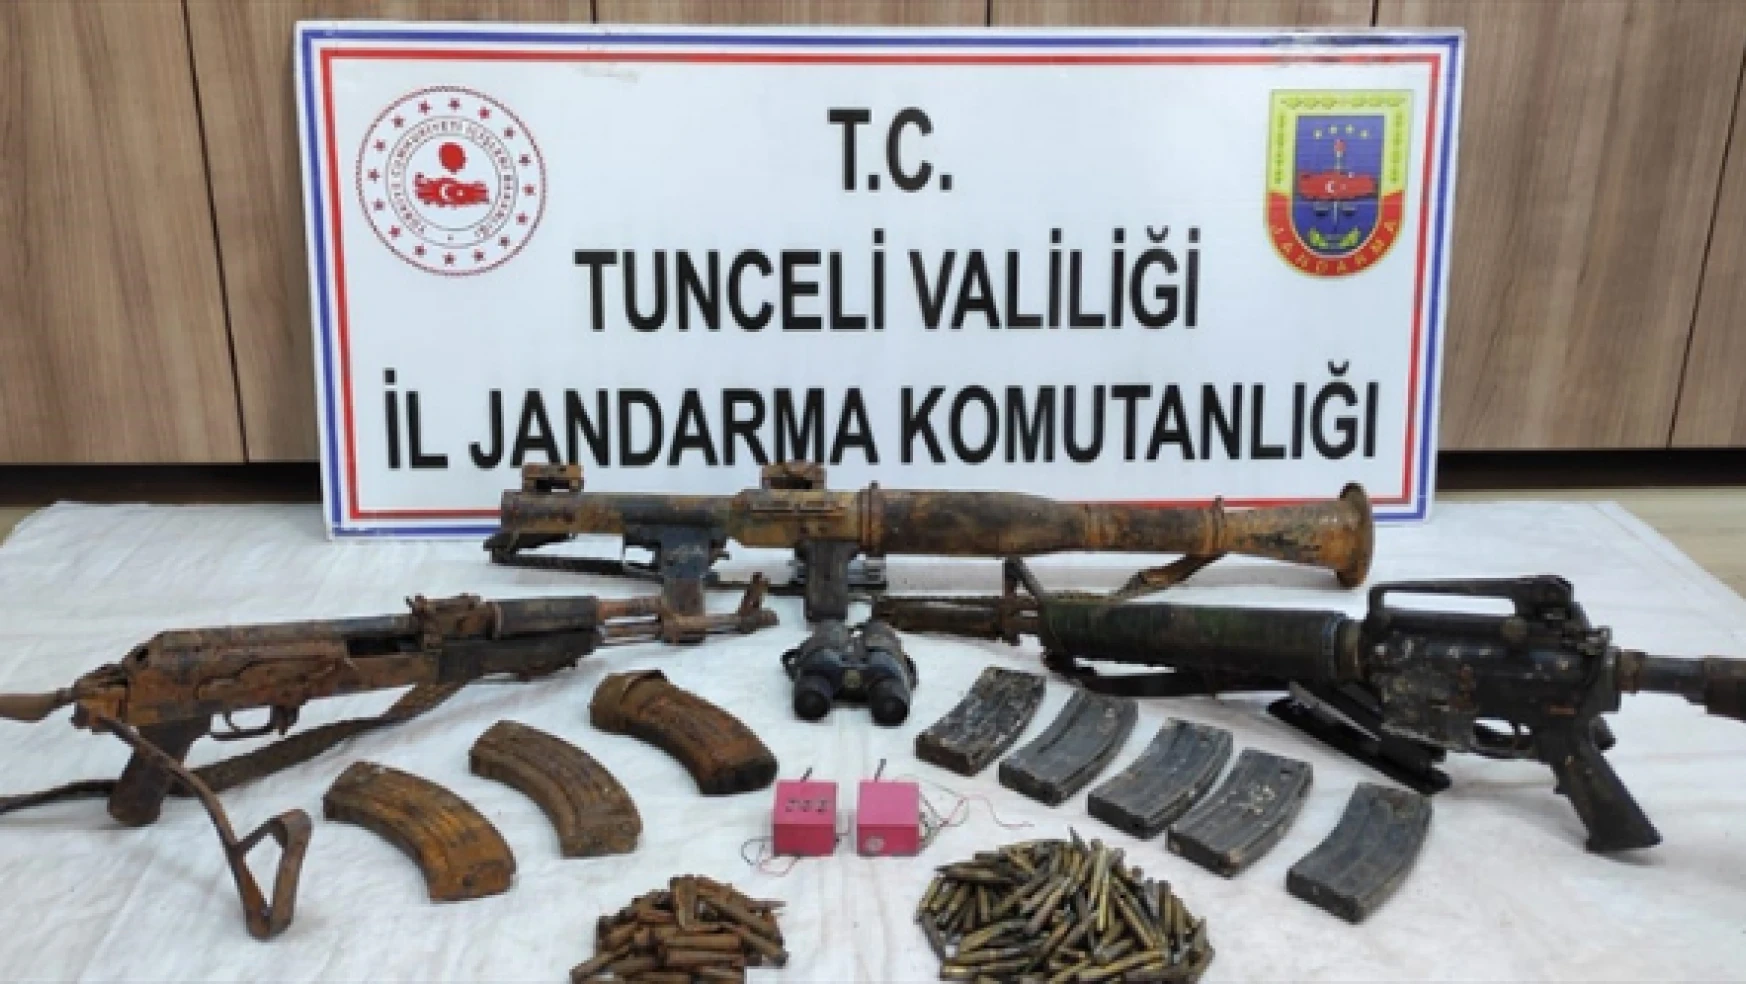 Tunceli'de teröristlerce kullanılan malzemeler ele geçirildi